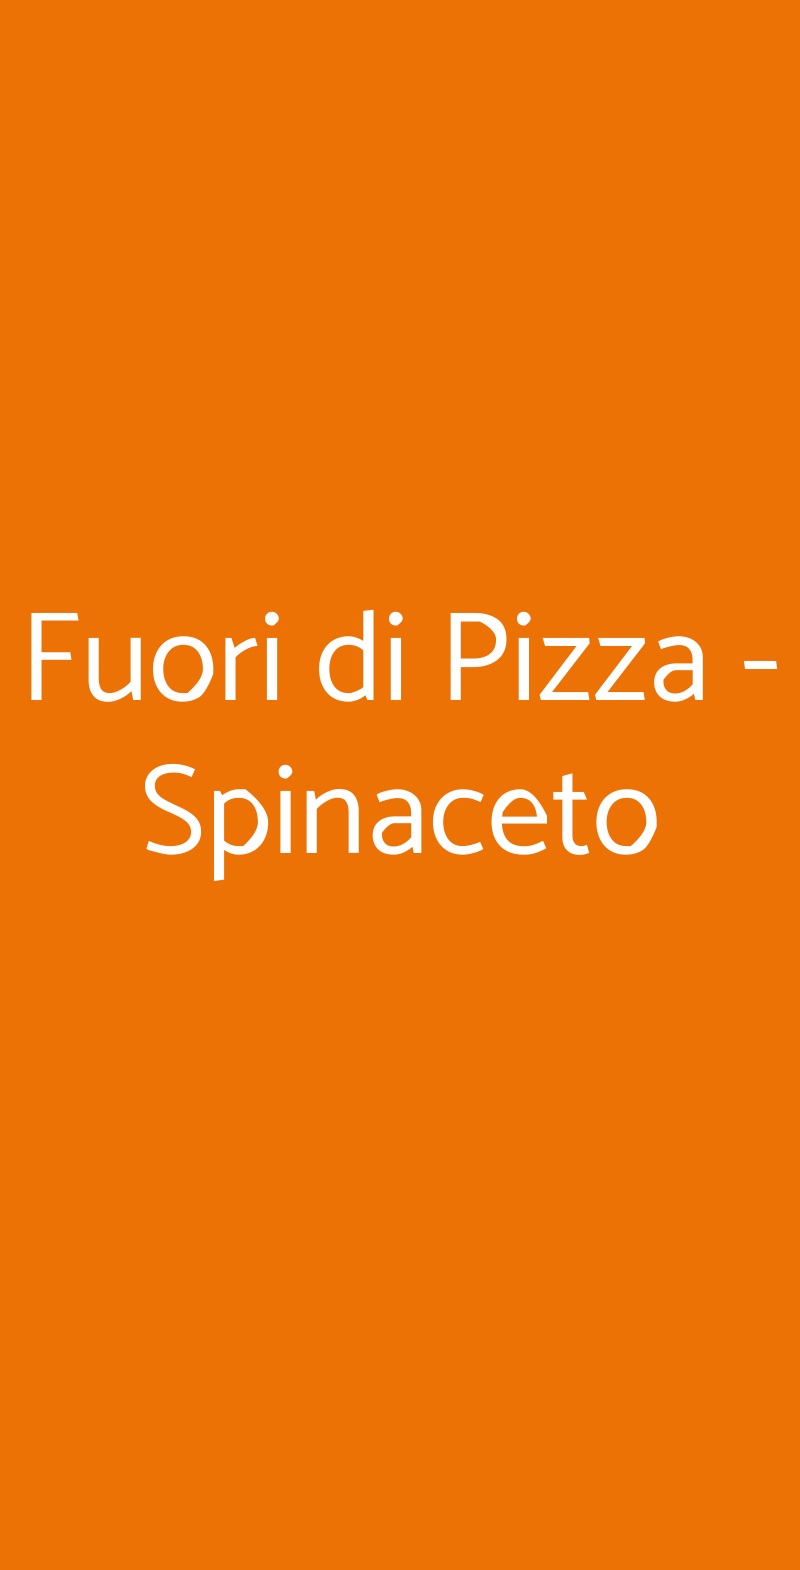 Fuori di Pizza - Spinaceto Roma menù 1 pagina